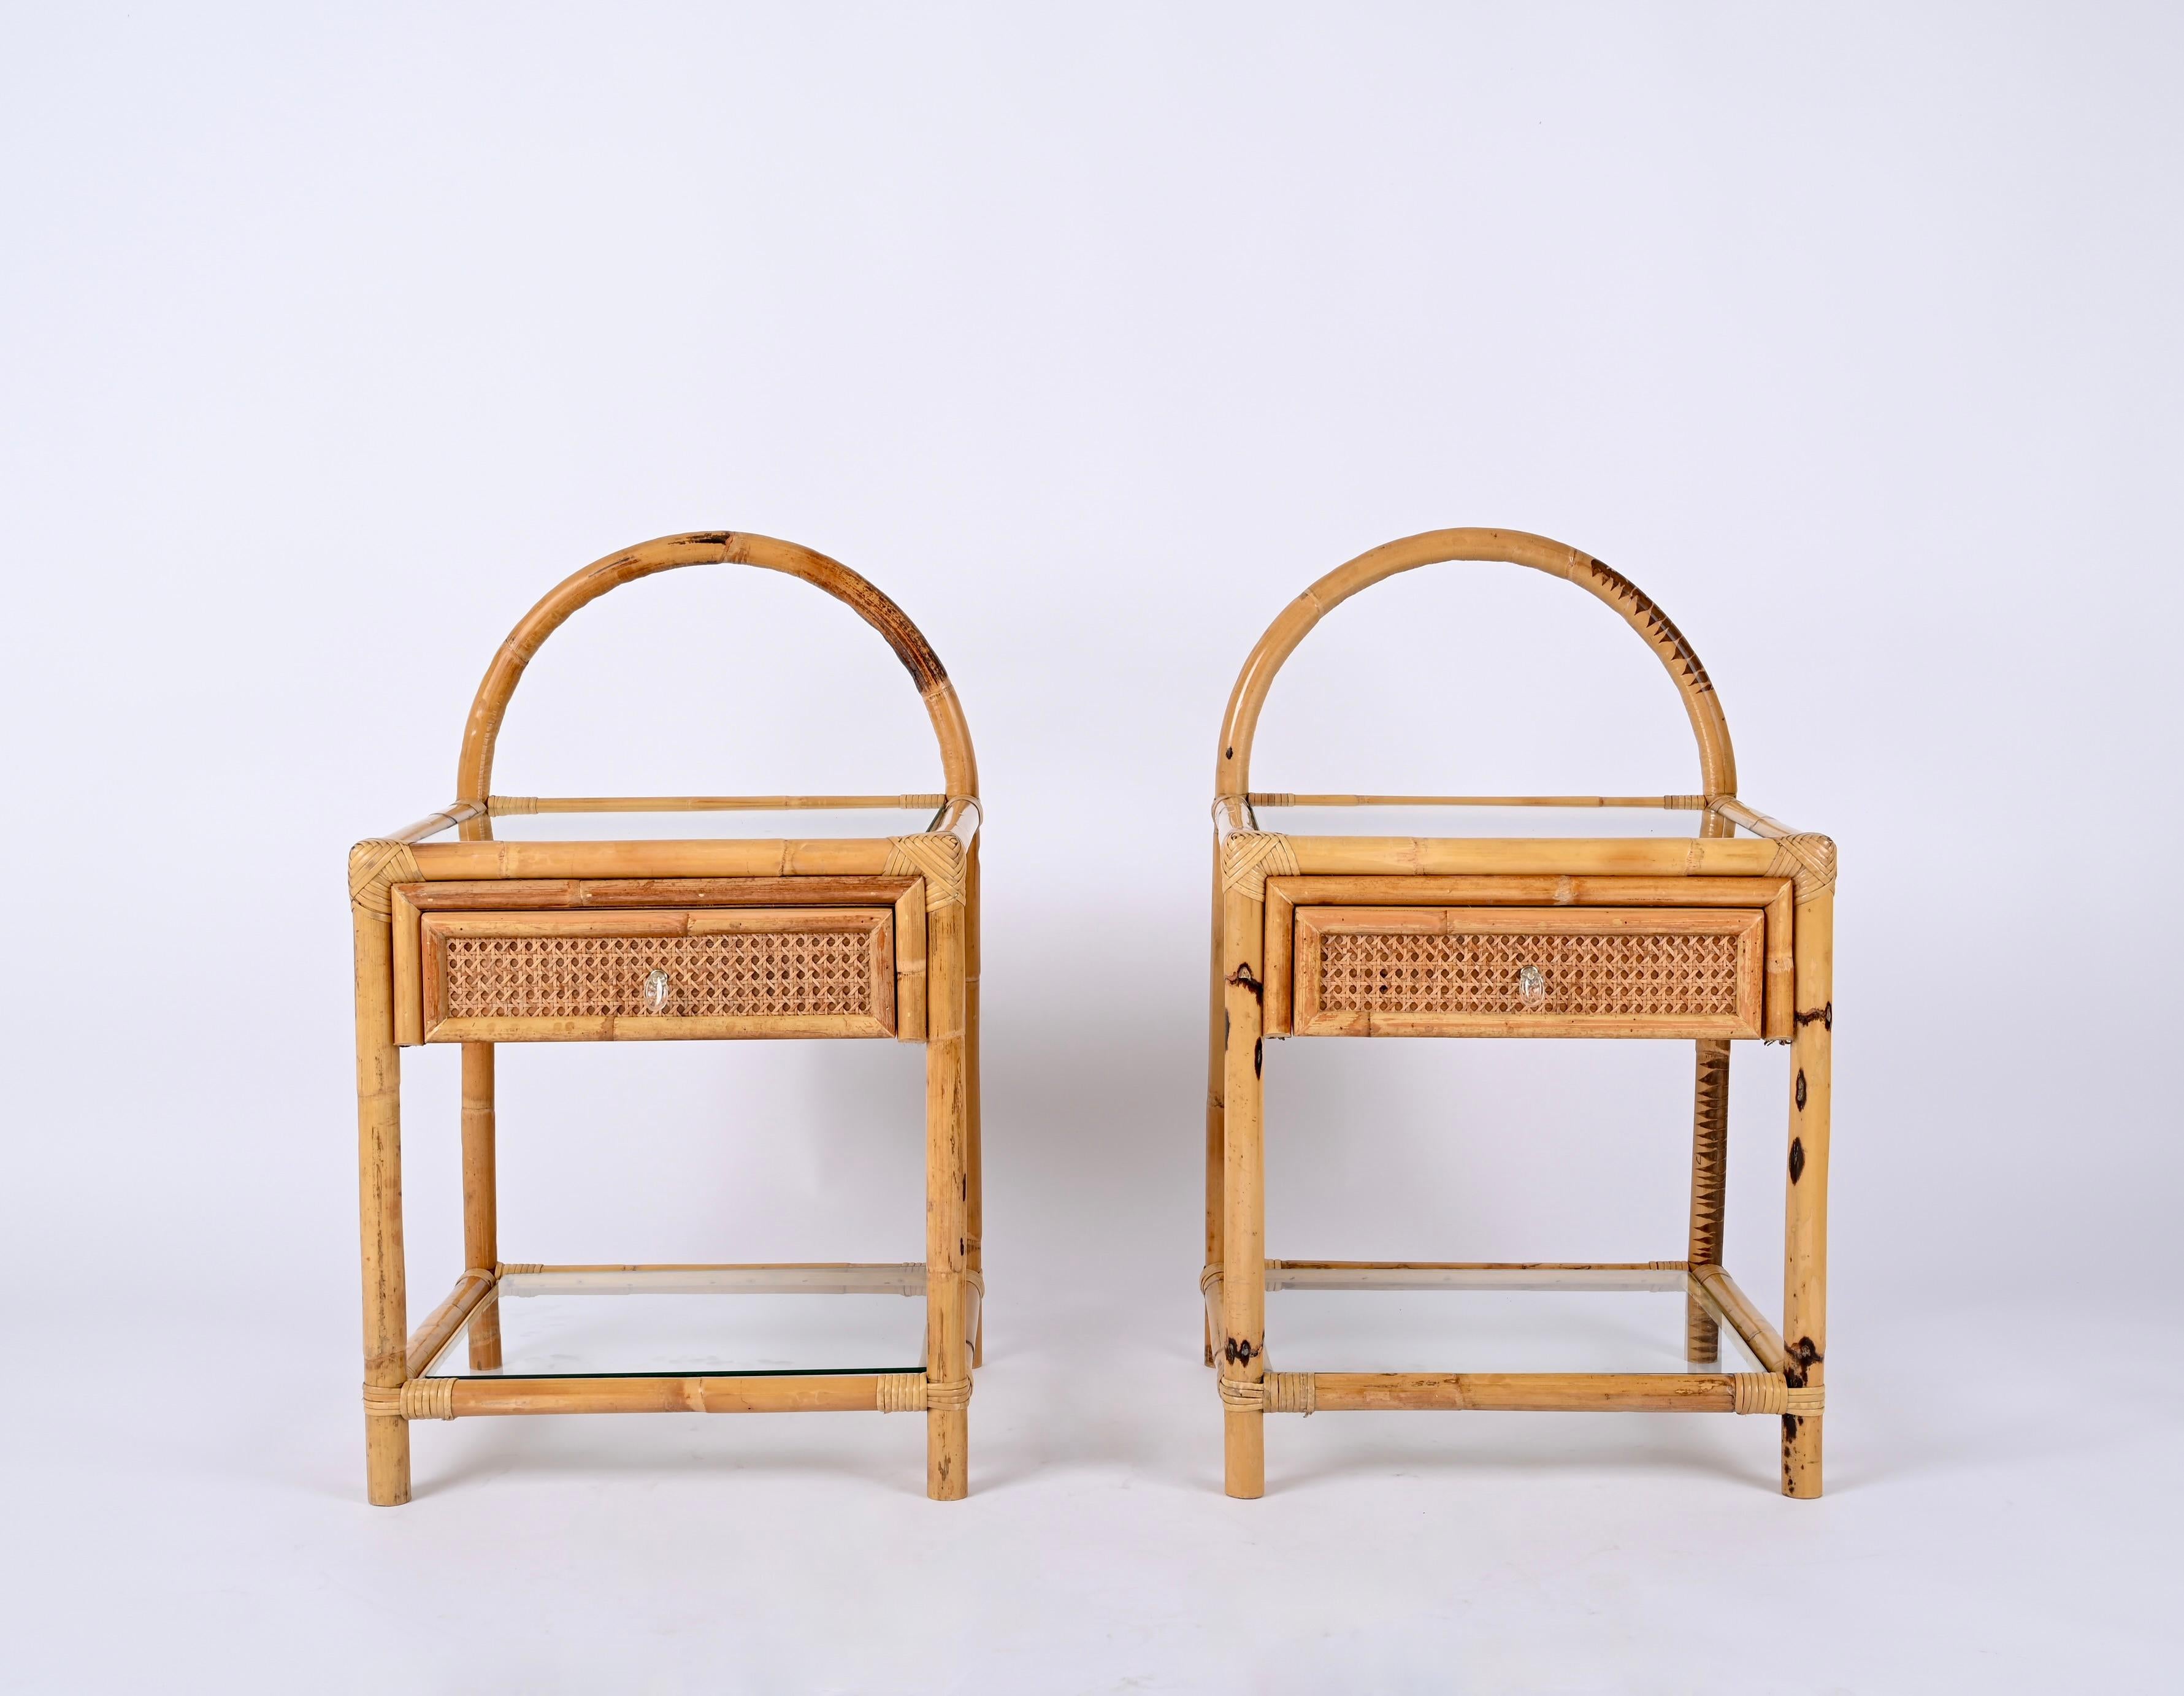 Erstaunlich Paar Mid-Century Bambus und Rattan Nachttische, entworfen in Italien in den 70er Jahren.

Diese einzigartigen Nachttische verfügen über eine Struktur aus gebogenem Bambus, die rundherum mit einem schönen handgeflochtenen Wiener